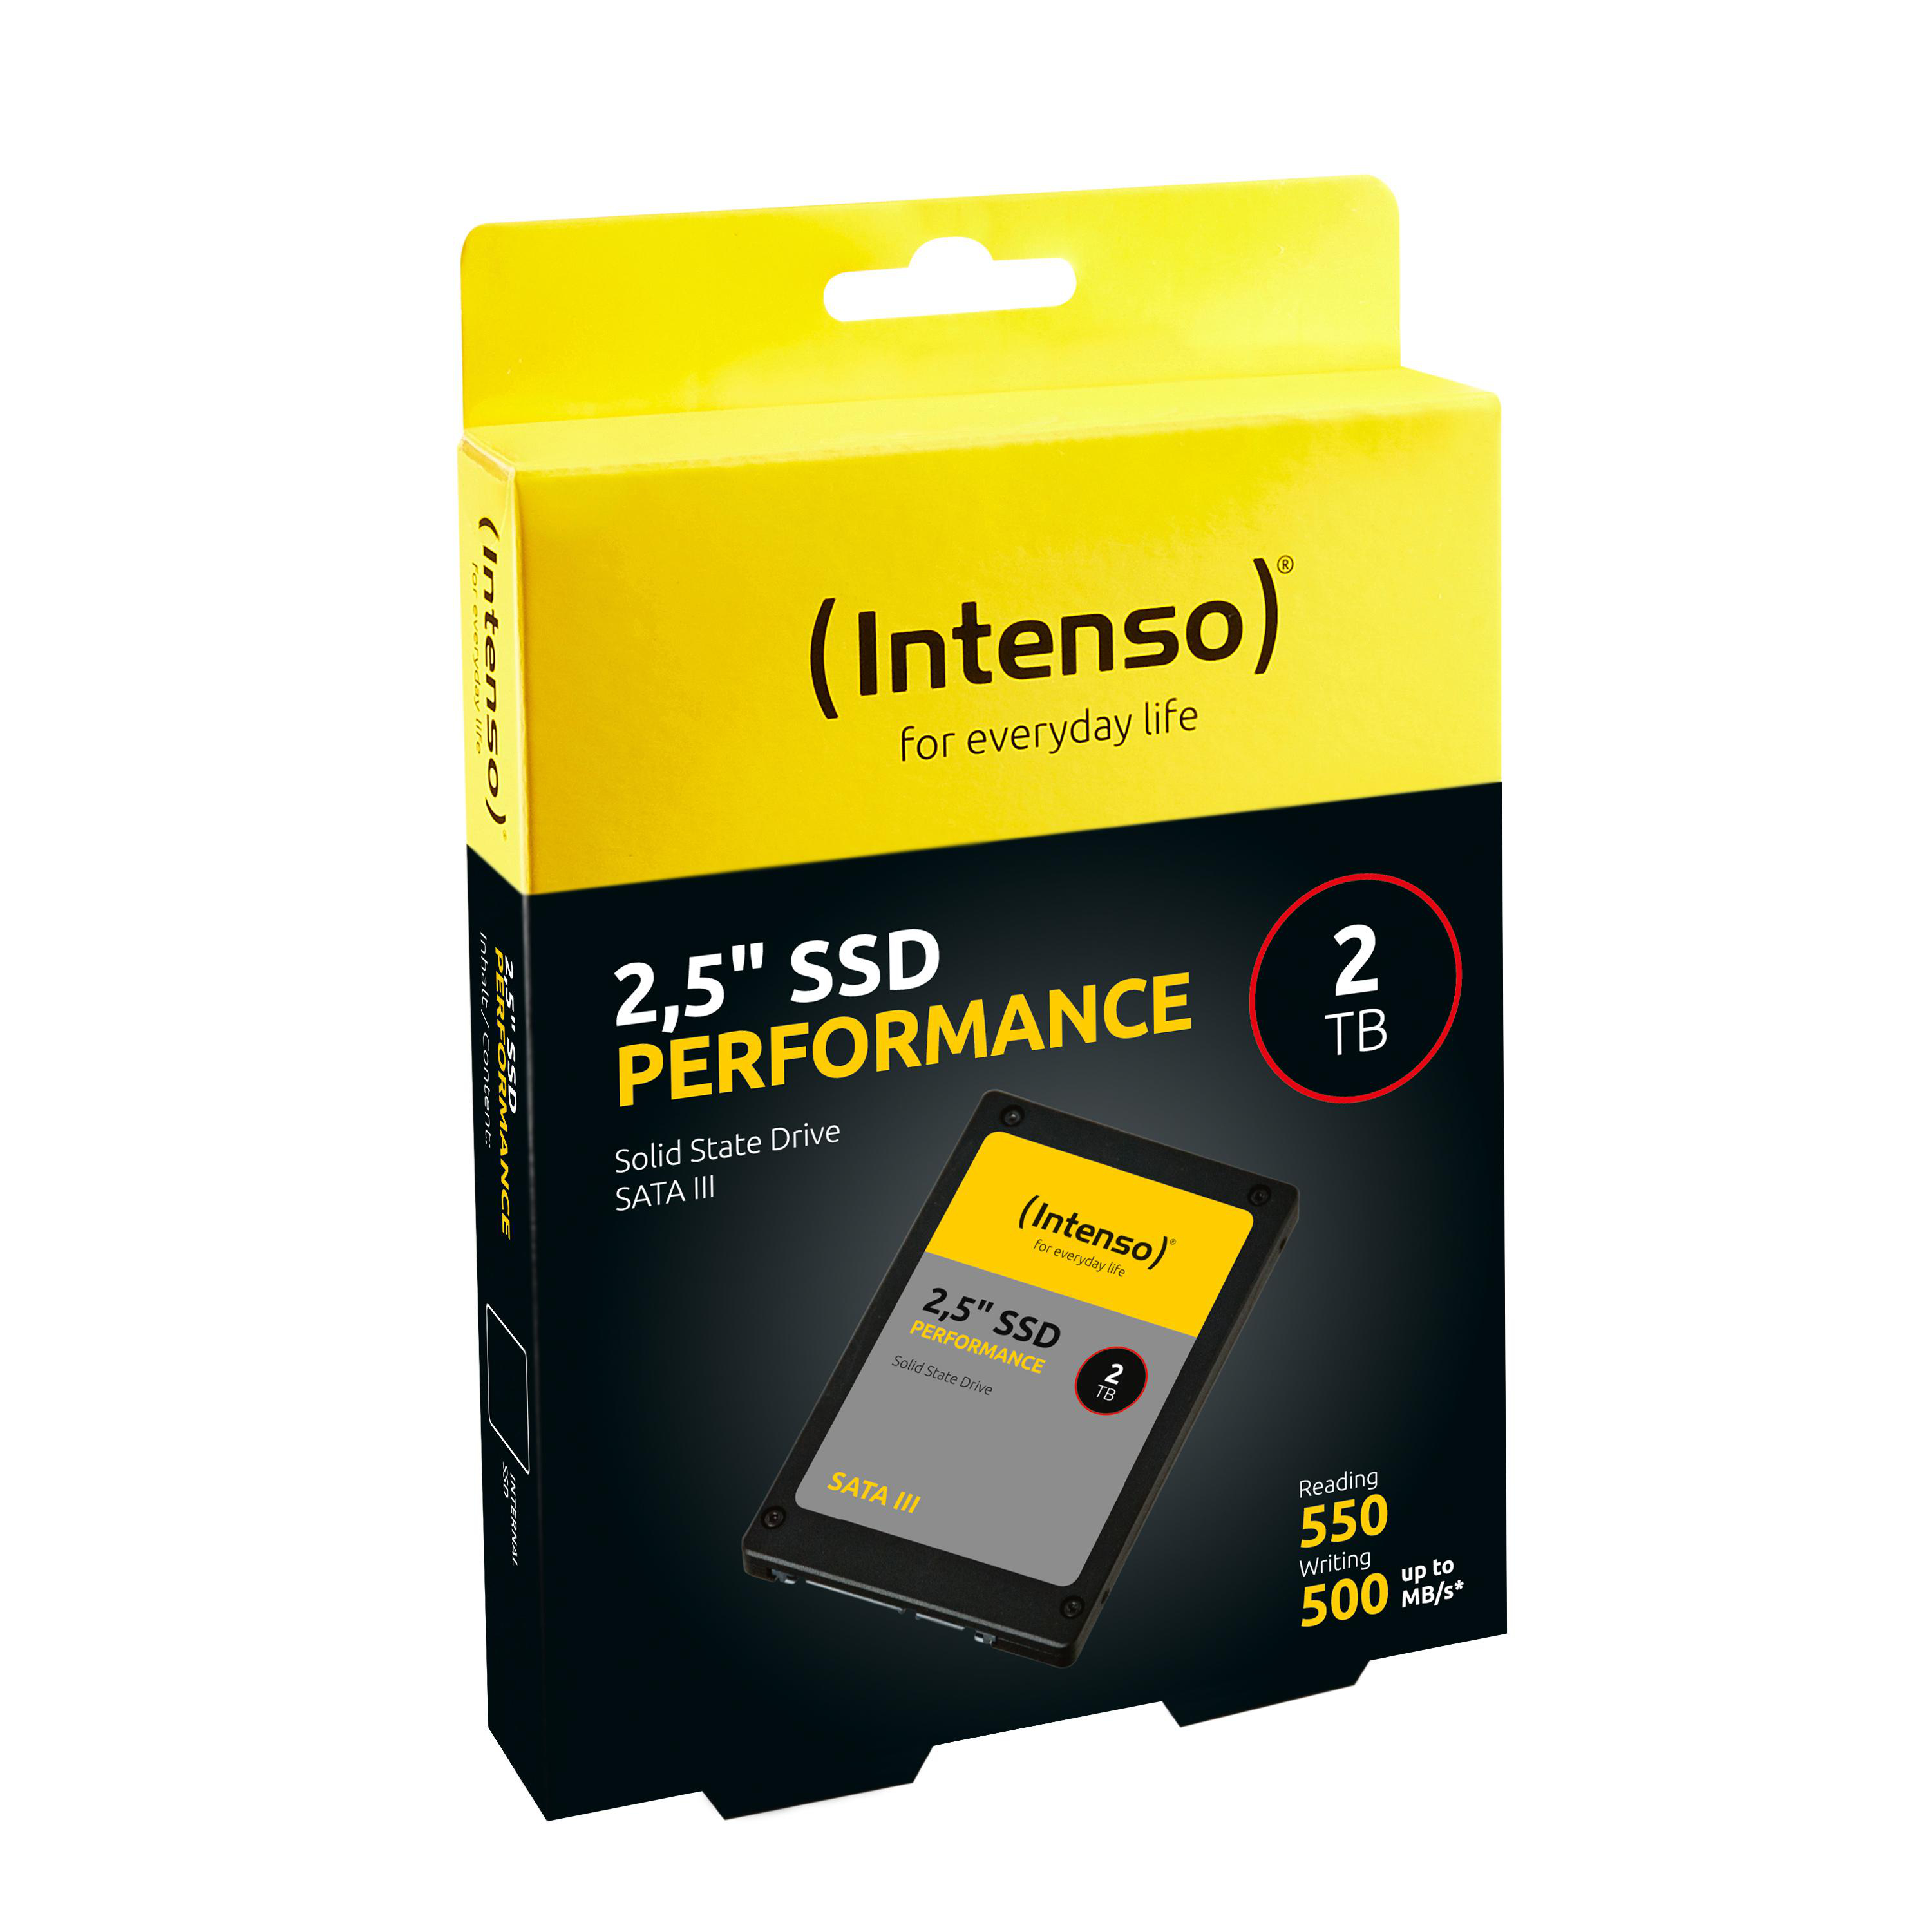 INTENSO SATA III TB intern Zoll, 6 Performance SSD 2,5 SATA 2 Gbps, Festplatte